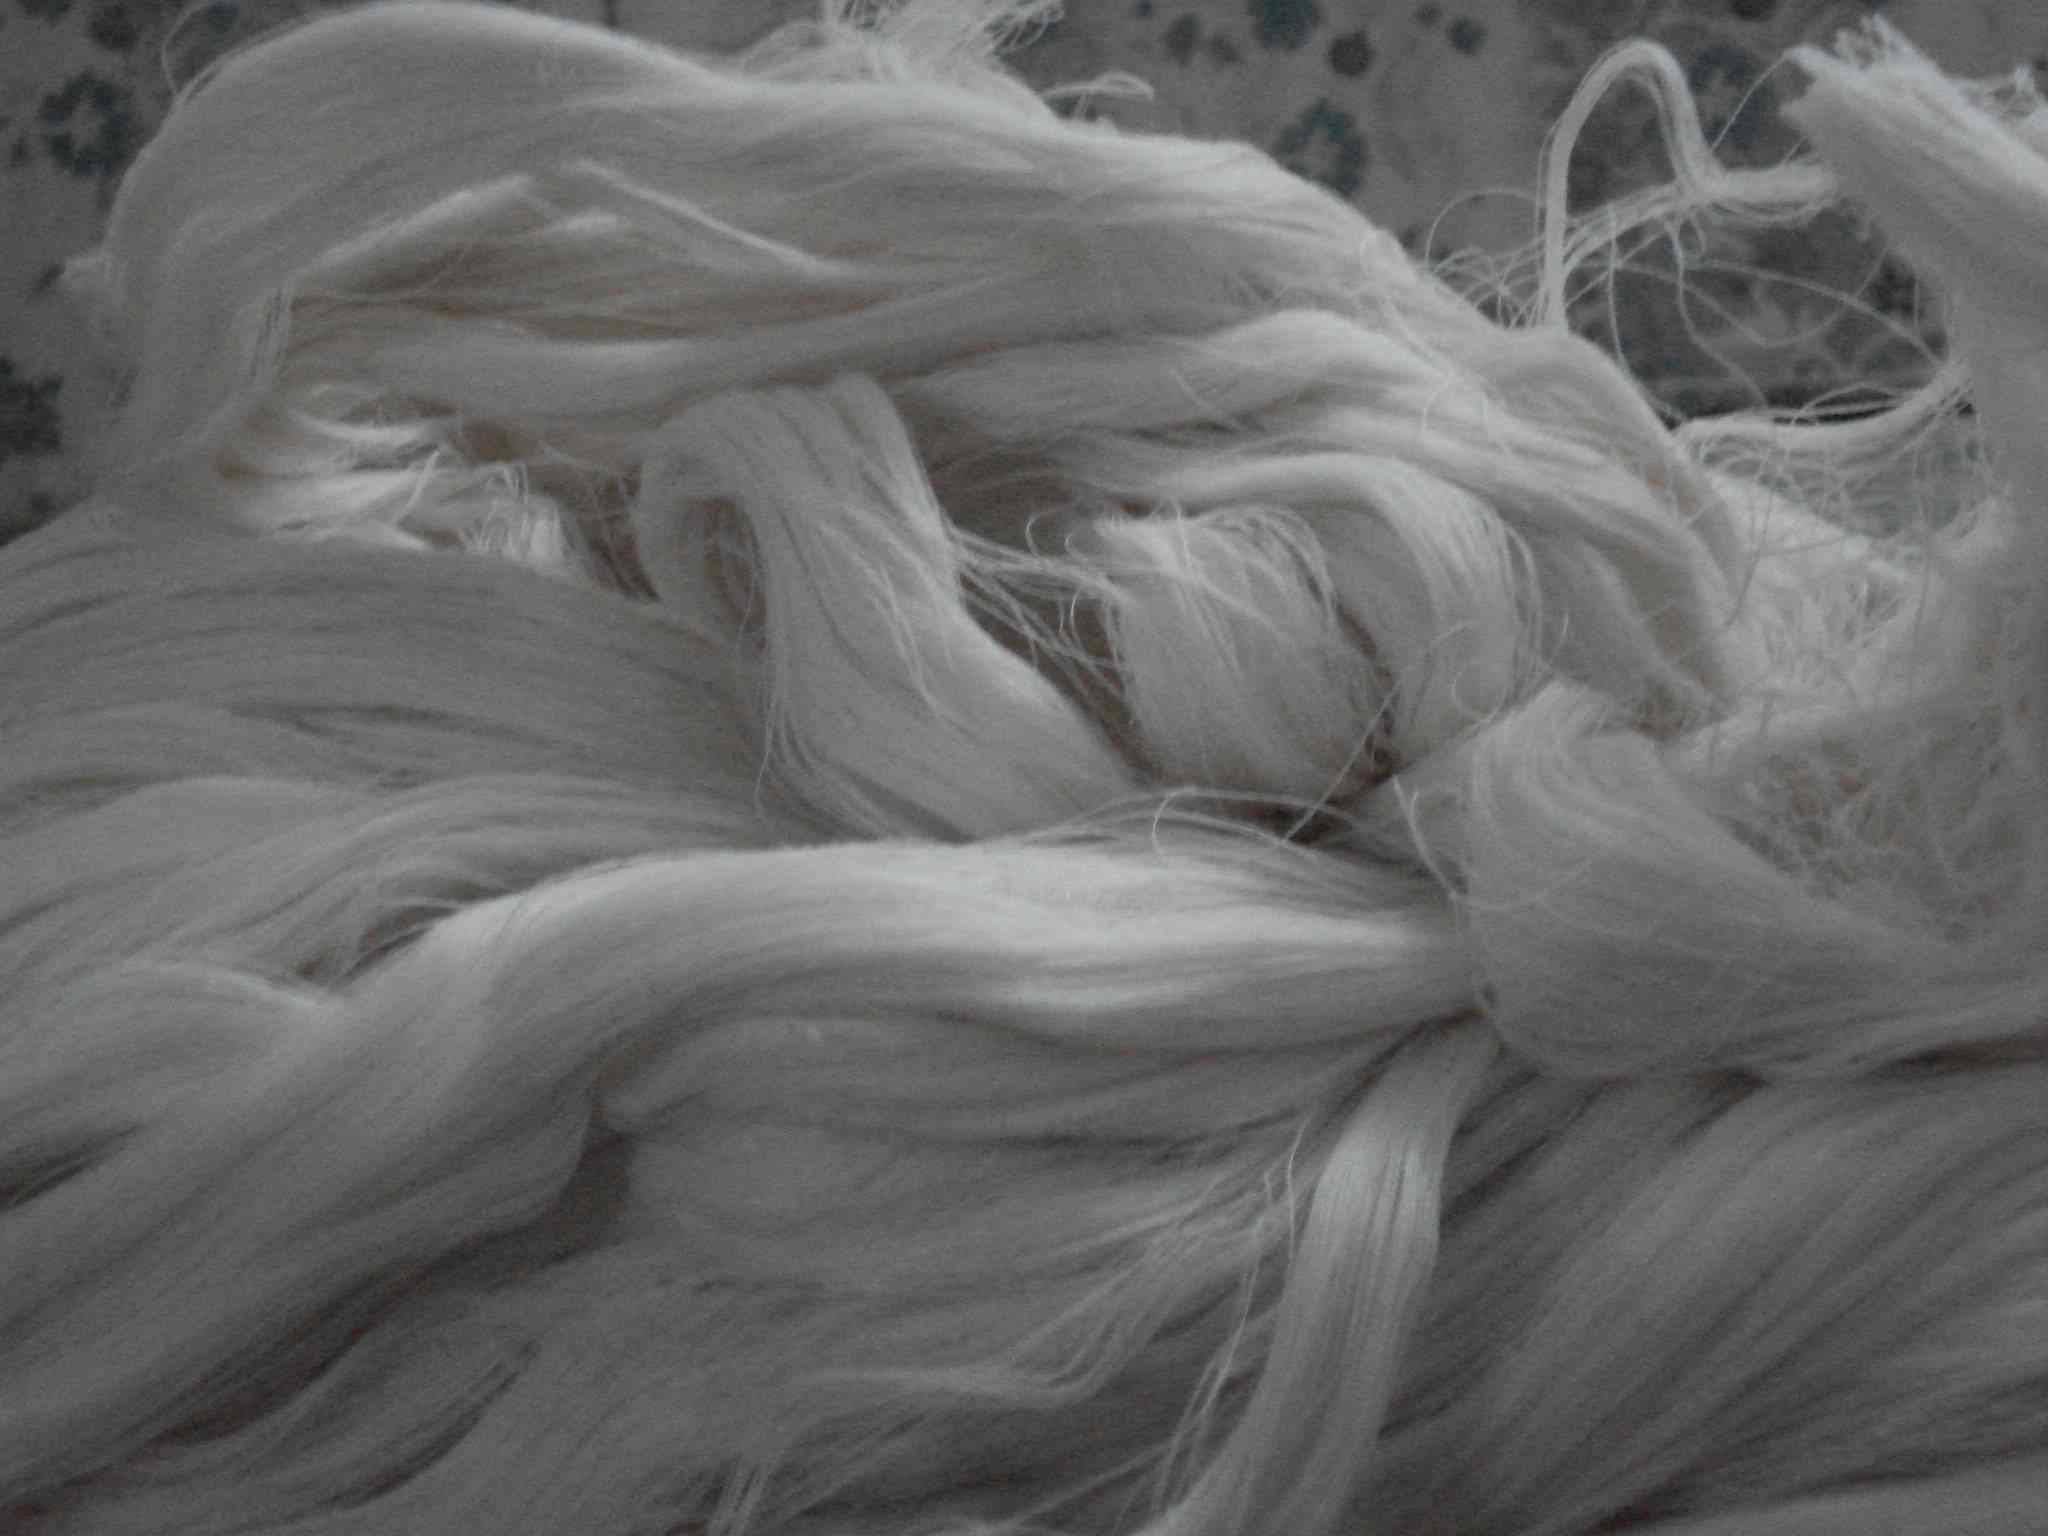  Unbleached 100% Cotton Yarn Waste (Небеленой 100% хлопок пряжа отходов)